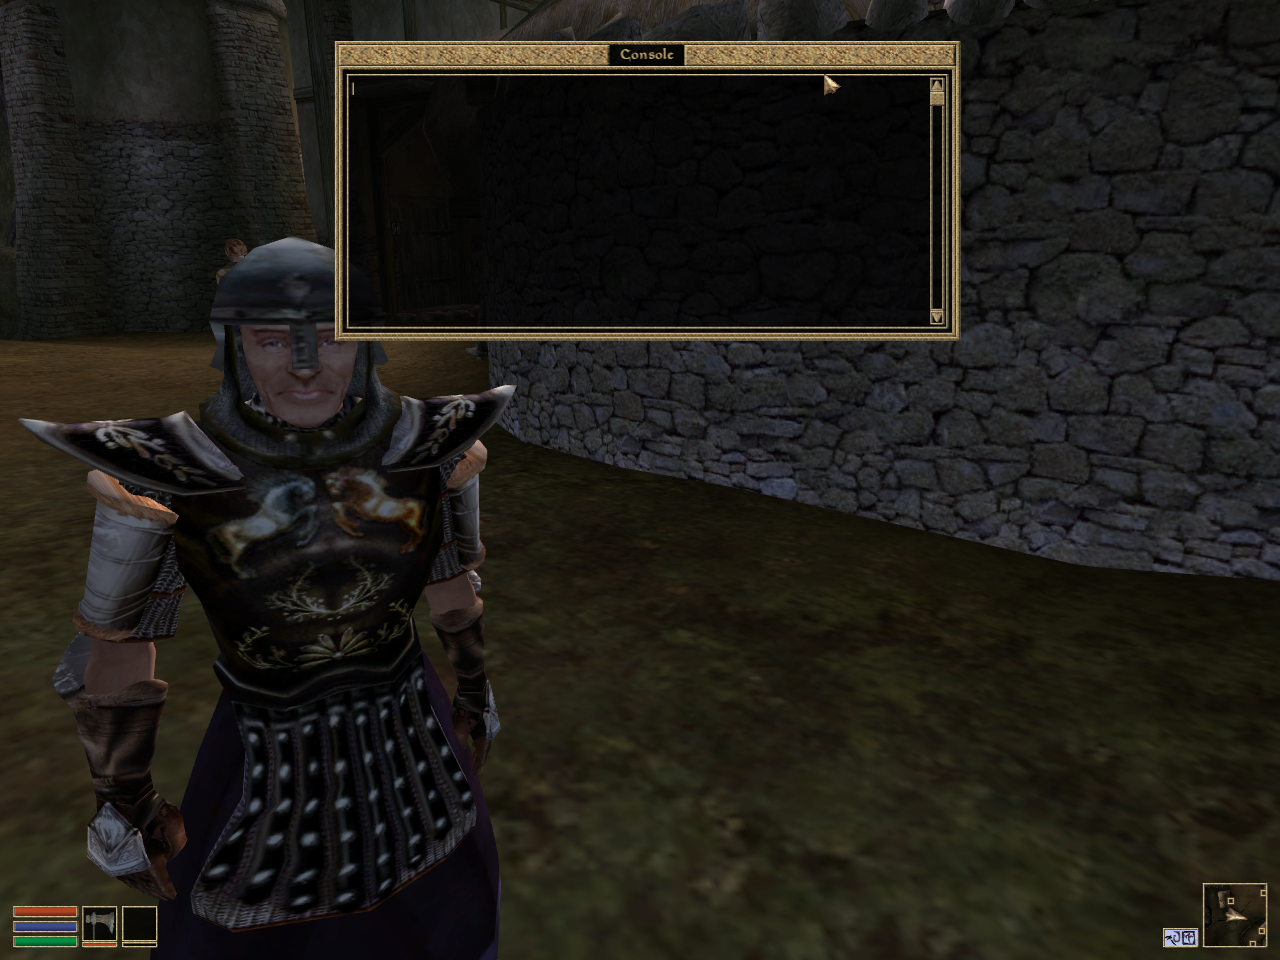 Elder Scrolls 3 Morrowind Console Commands